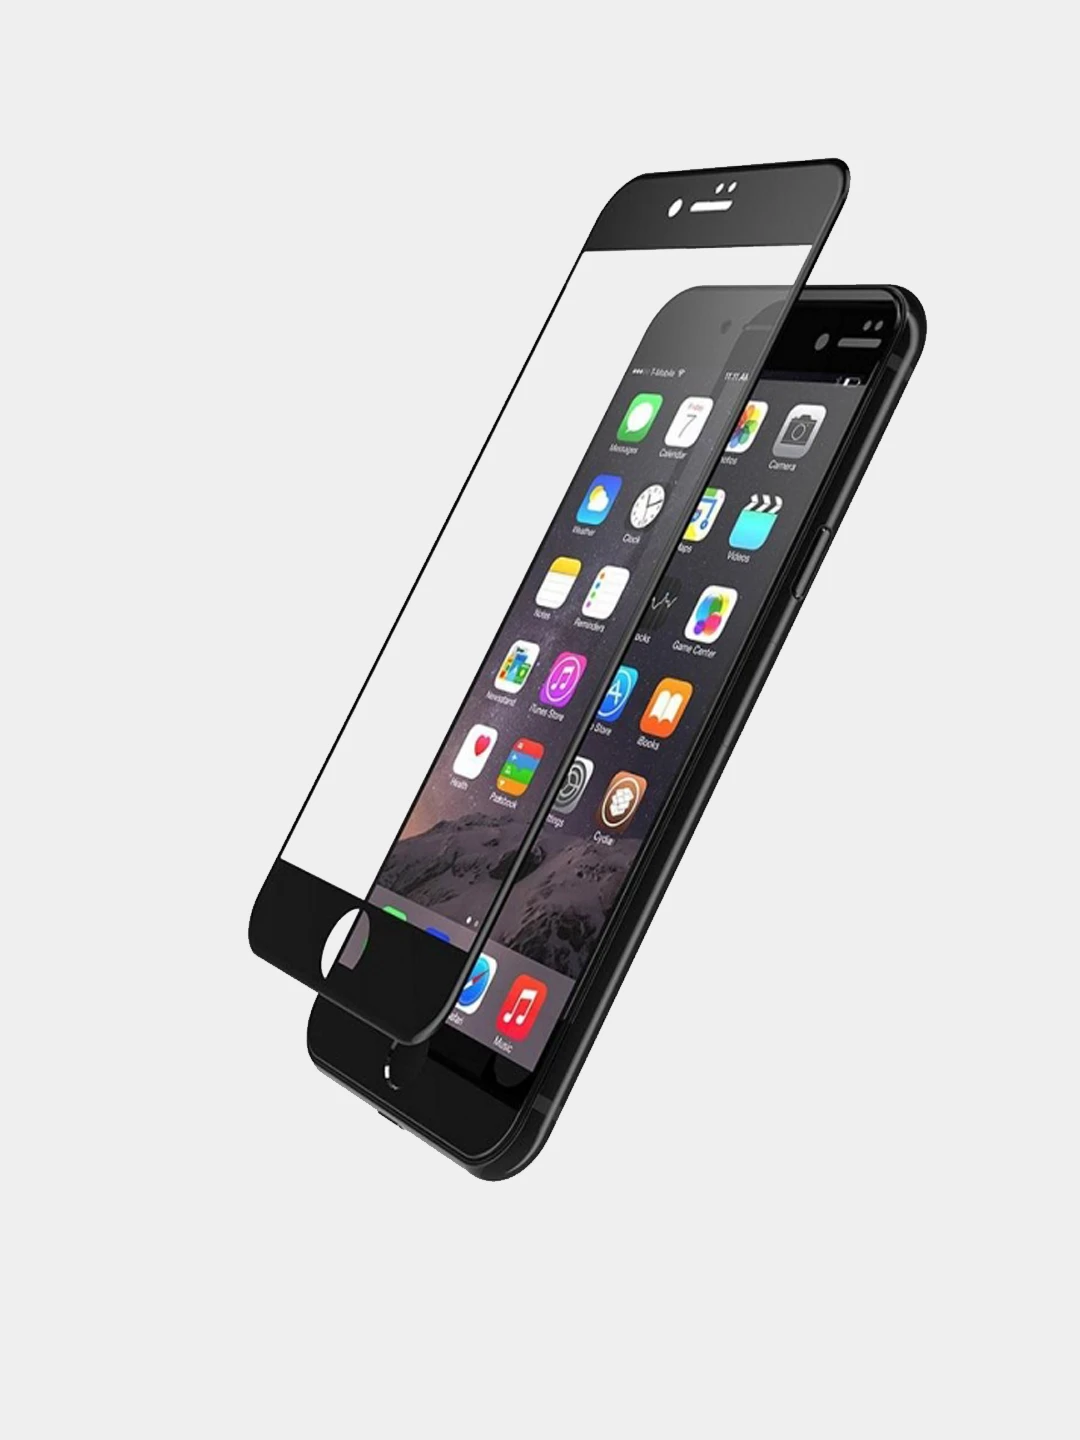 Стекла на телефон спб. Apple iphone 6 6s защитное стекло. Защитное стекло iphone 7 Gorilla. Стекло iphone 6. Защитные стекла Tempered Glass.